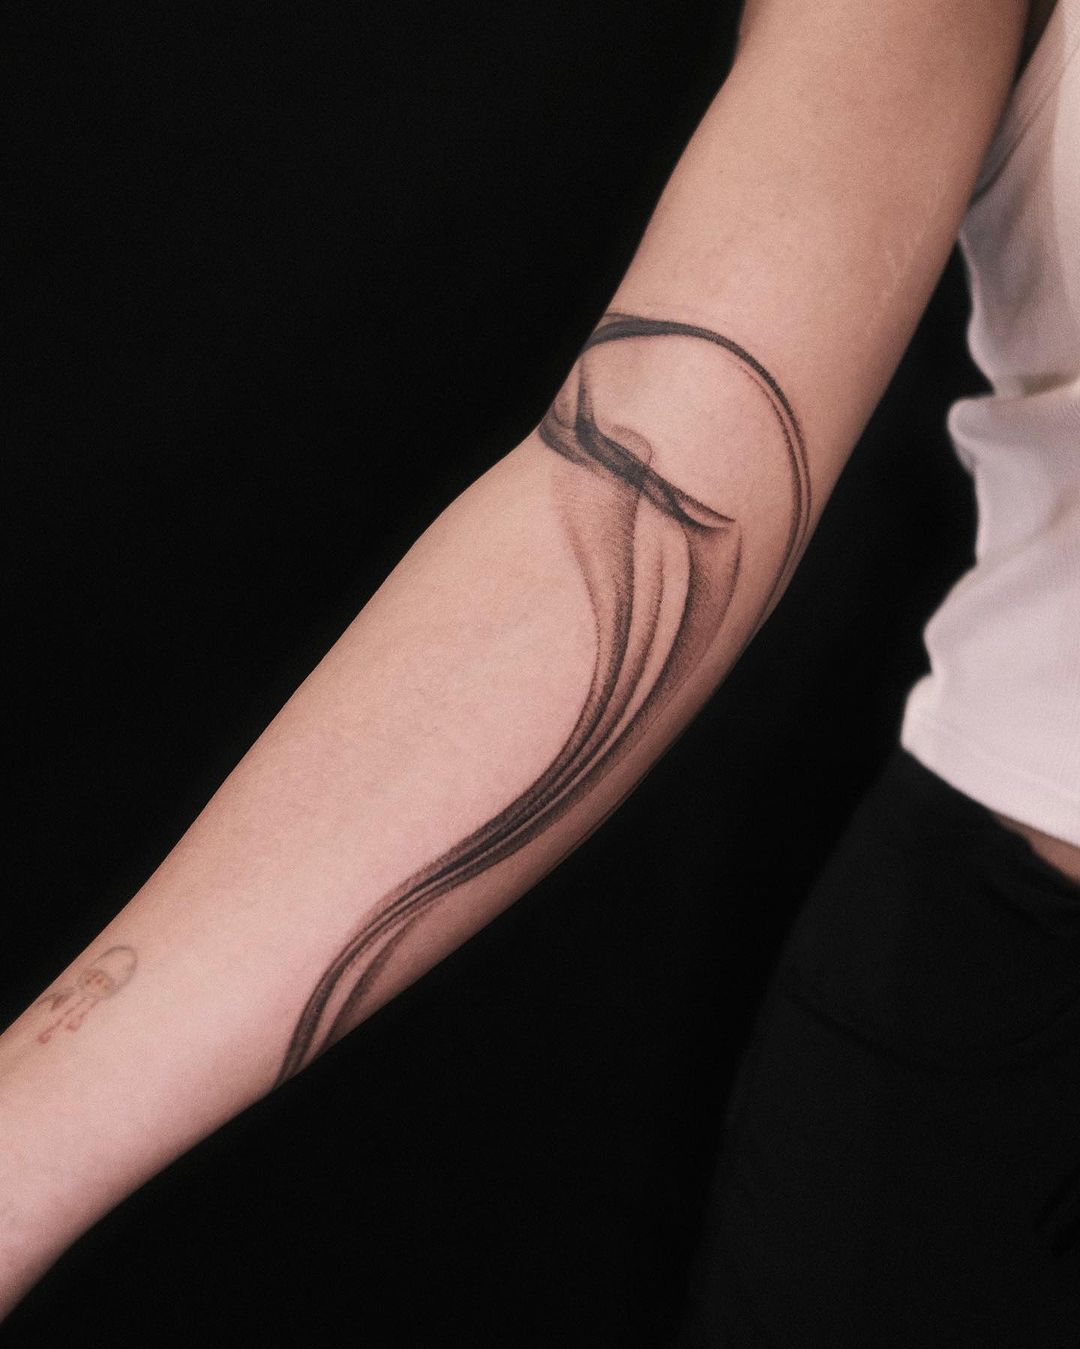 Blackwork tattoo ideas for women by noir tattooer